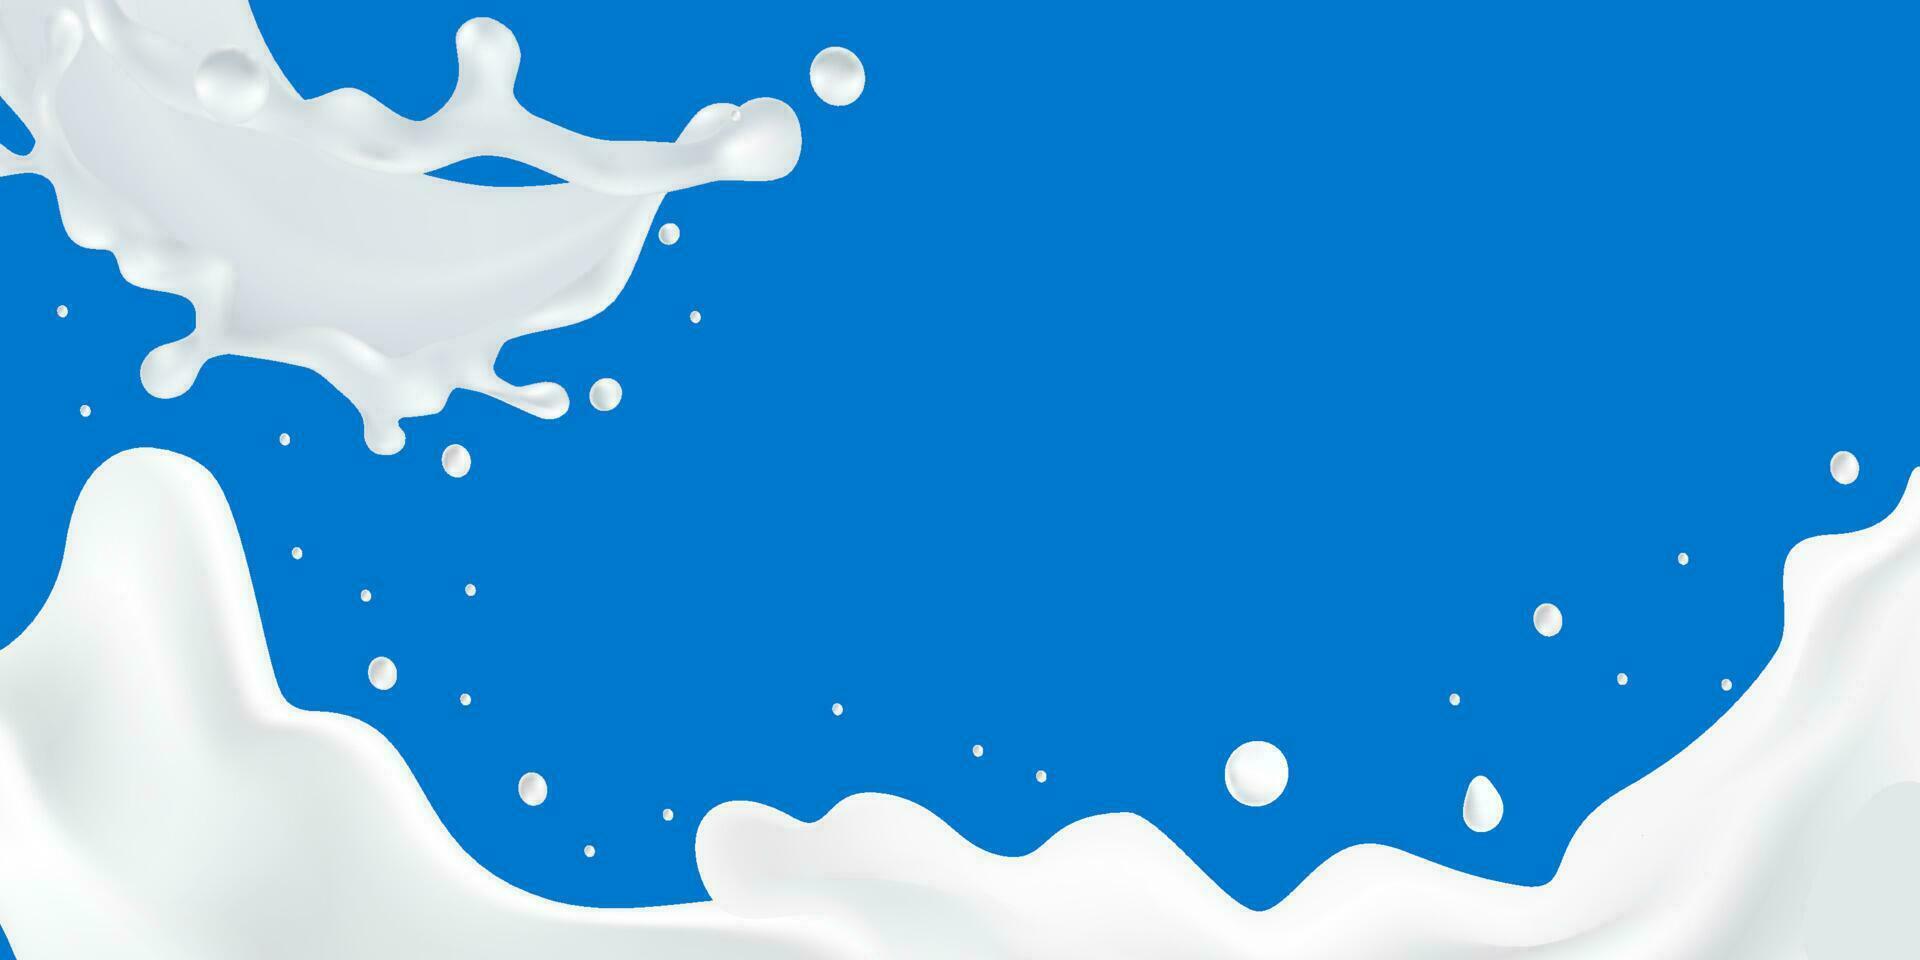 abstrakt bakgrund krusning mjölk med fri copy för text, vektor illustration och design.